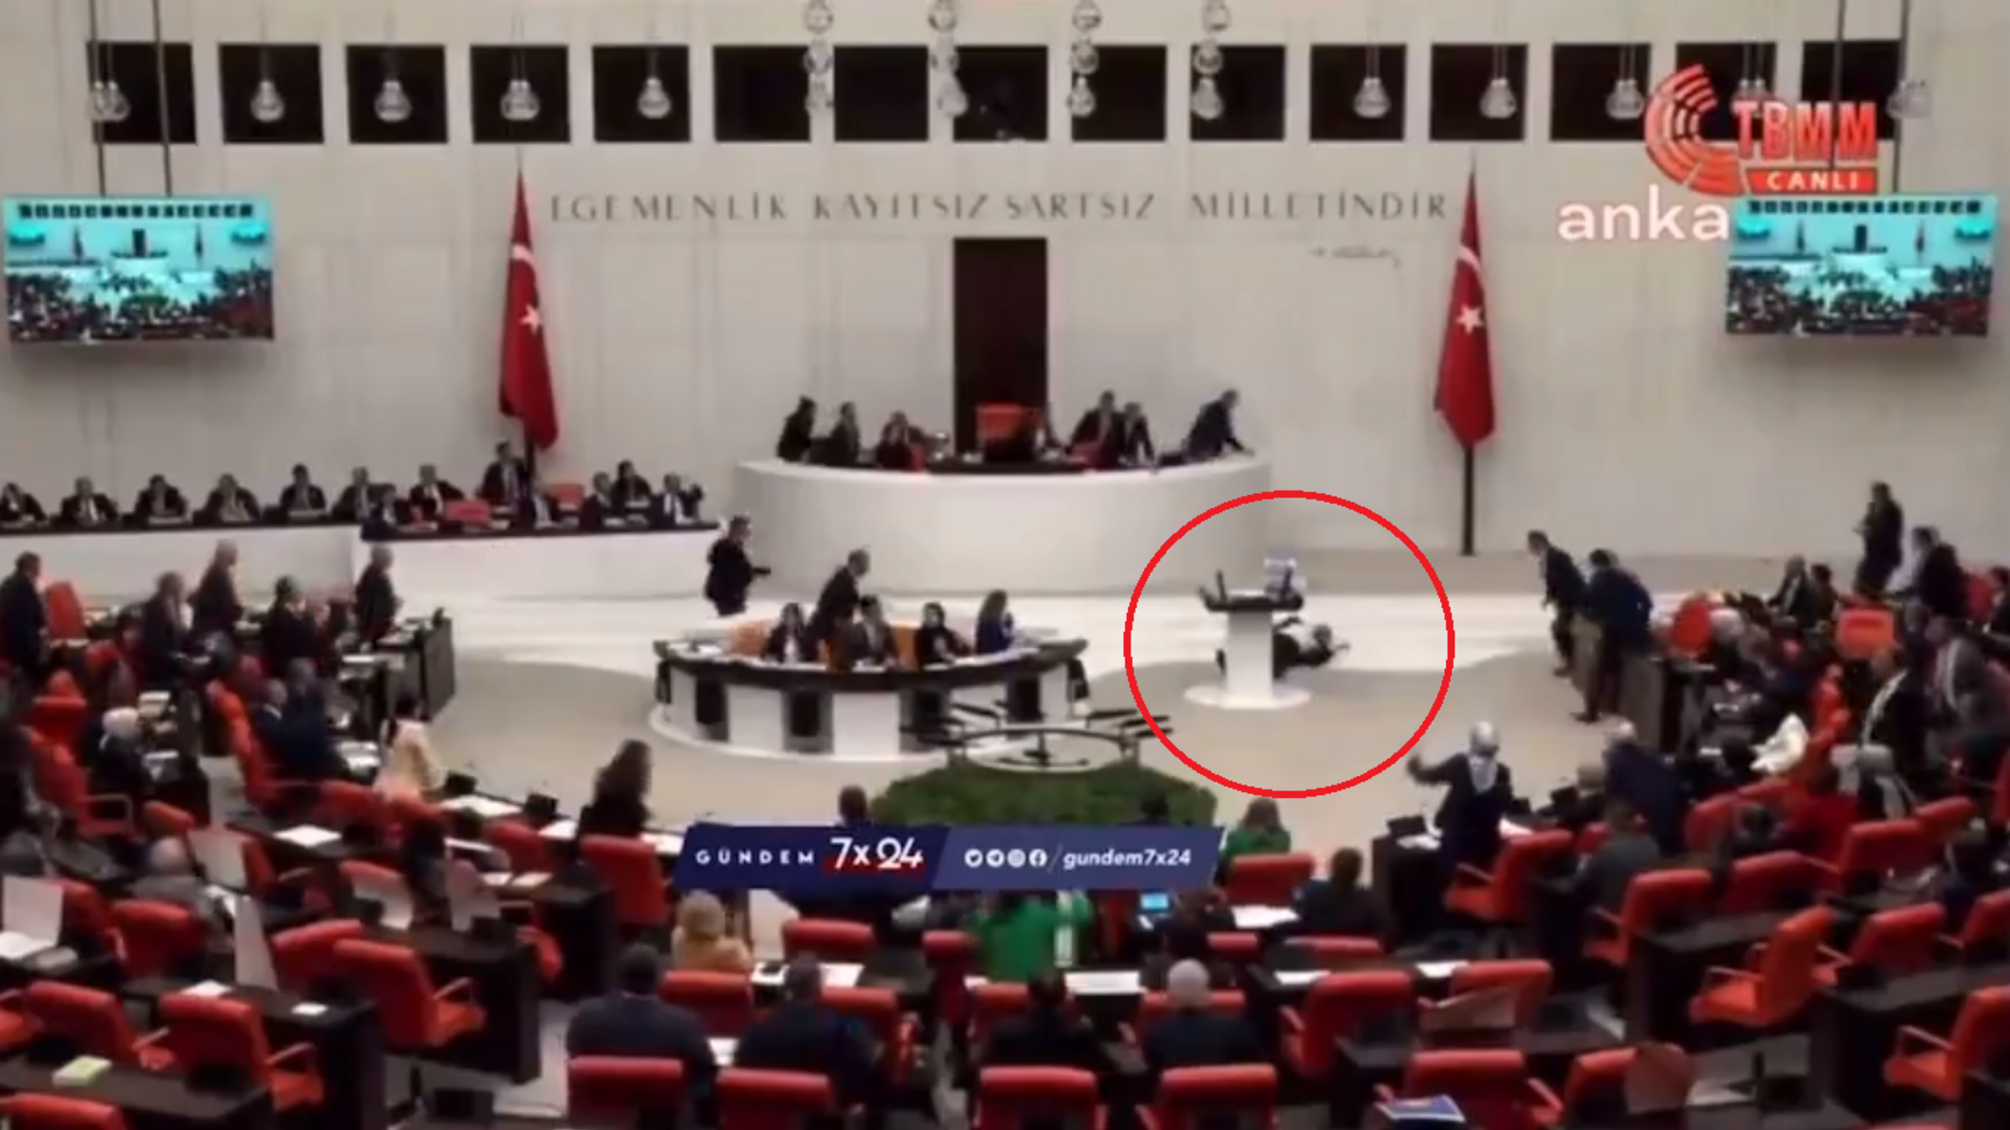 У турецького депутата стався серцевий напад під час виступу в залі парламента